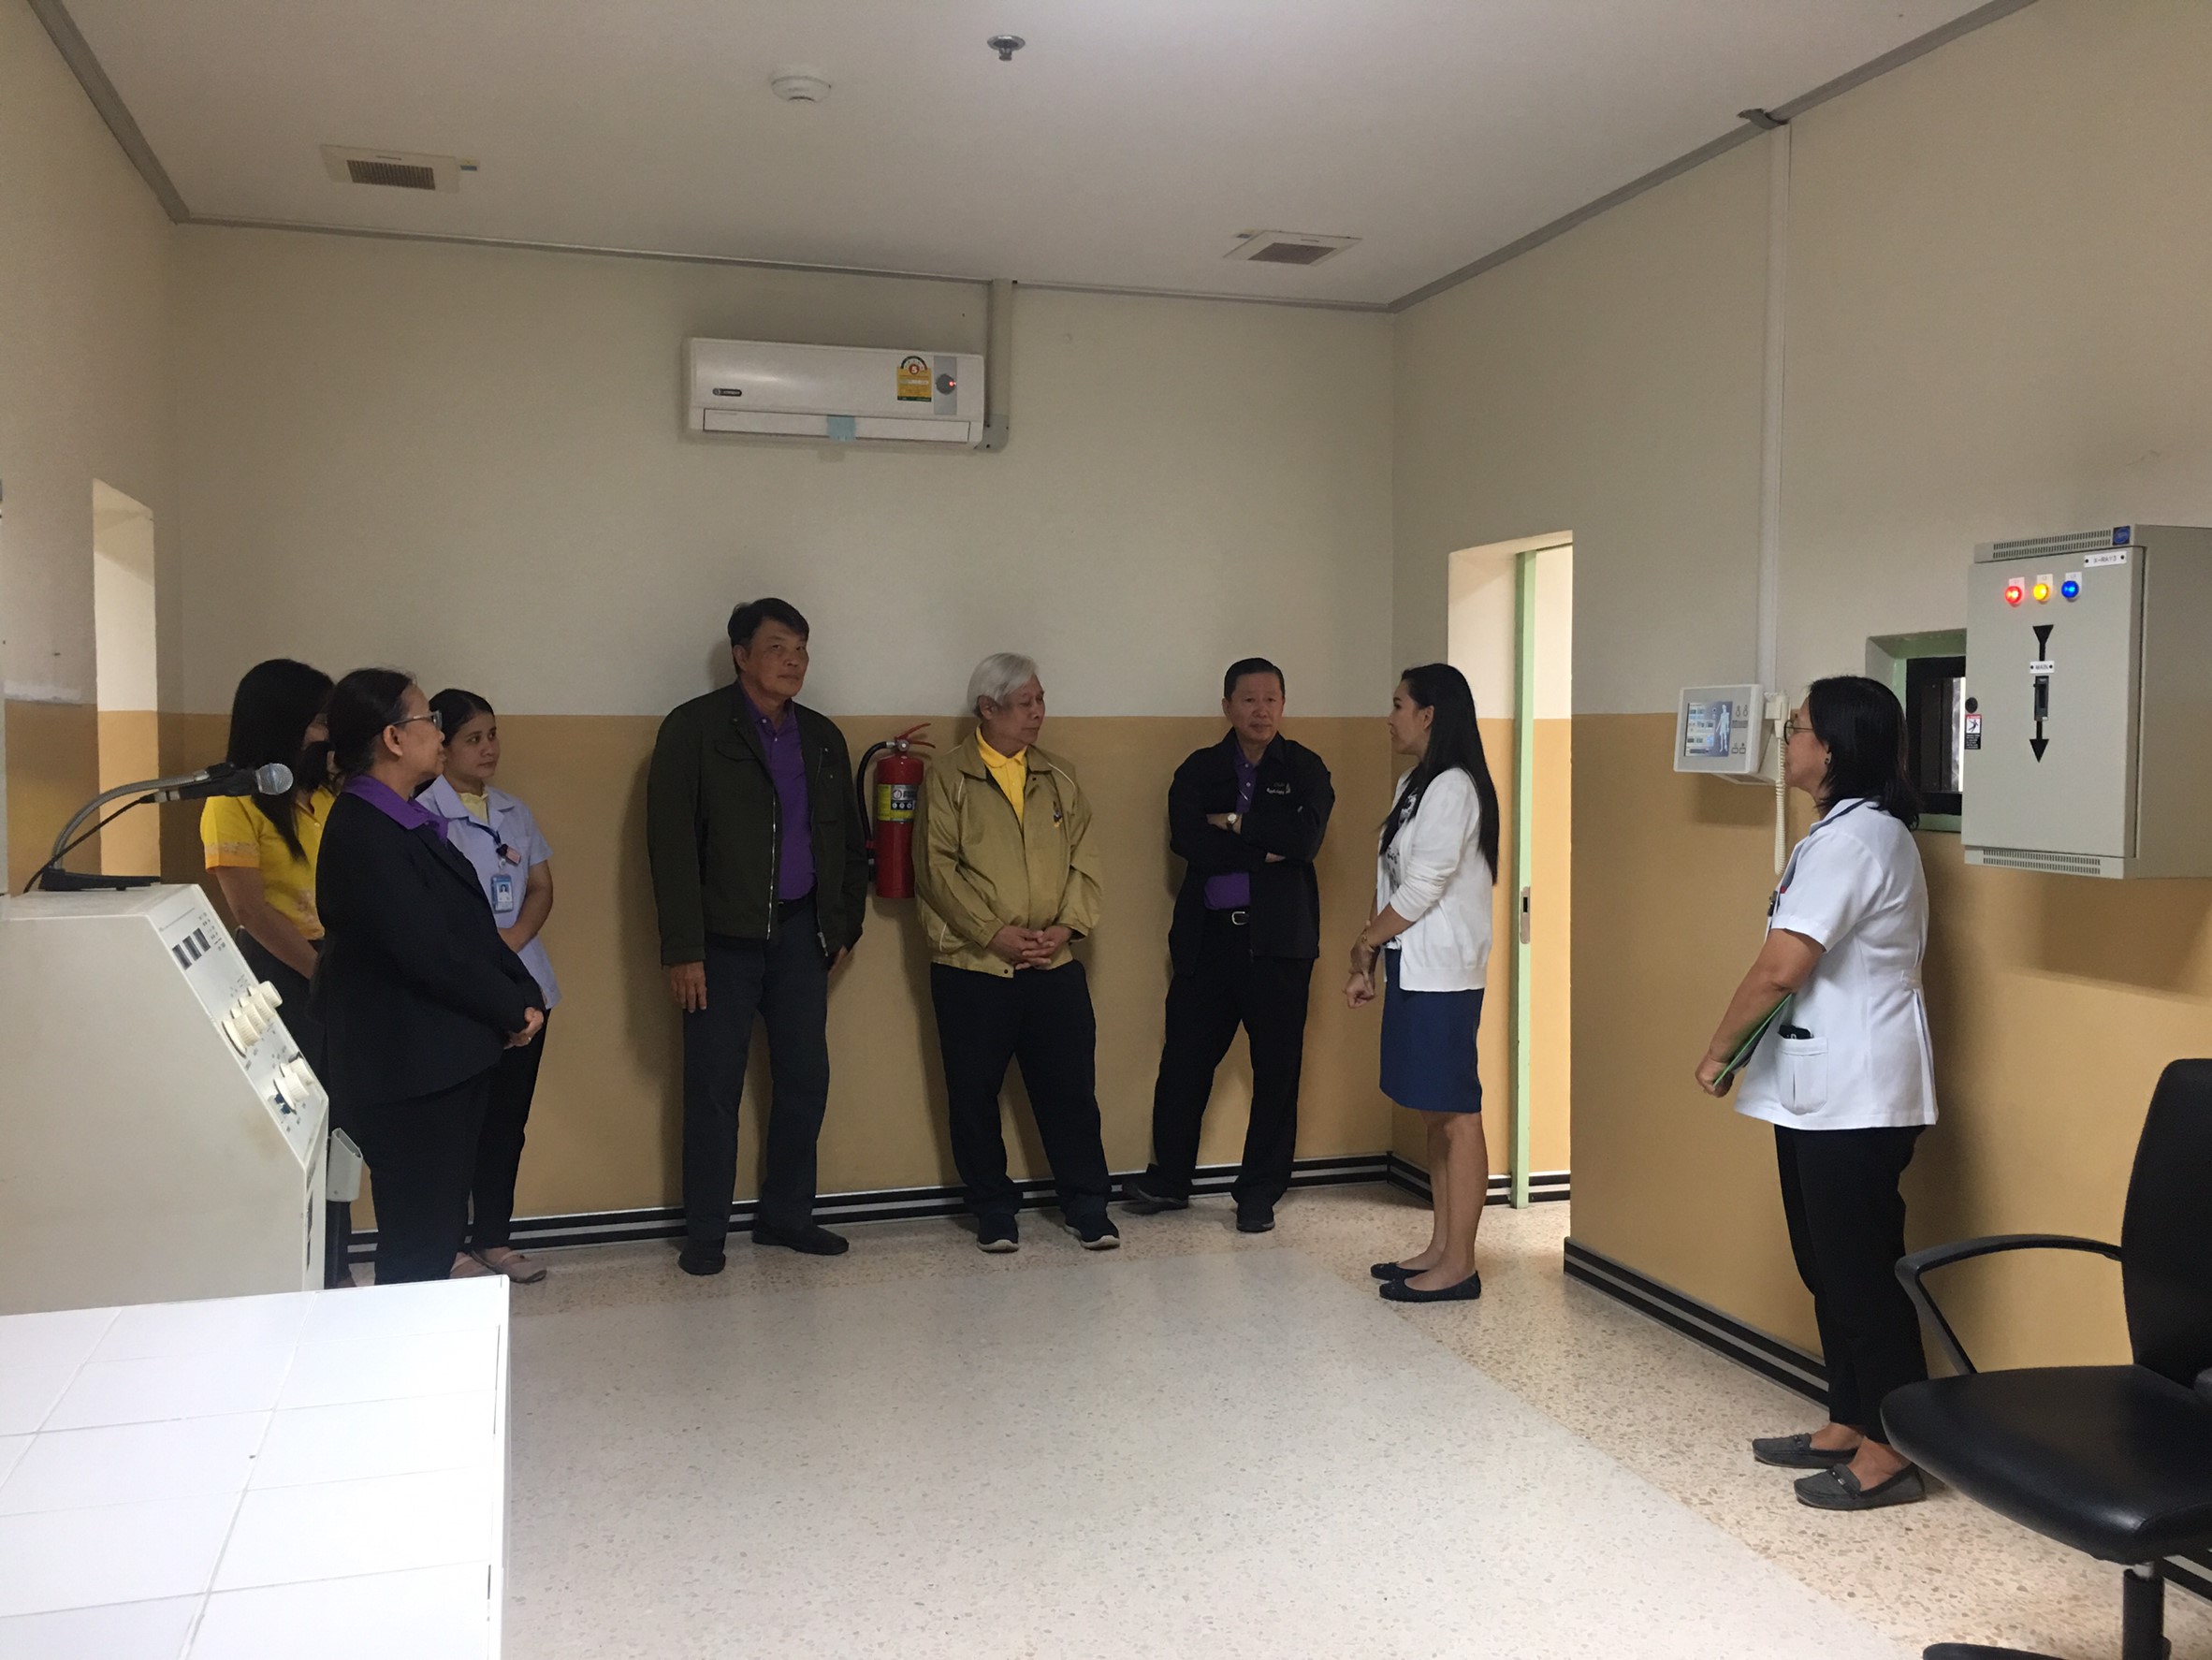 ประชุมวิชาการร่วมกับรังสีการแพทย์แห่งประเทศไทย ครั้งที่17 27-29 พ.ย. - พร้อมเข้าเยี่ยมและให้กำลังใจหน่วยงานรังสีวิทยาในพื้นที่จังหวัดอุบลราชธานีระหว่างวันที่ 25-26 พฤศจิกายน 2562 72